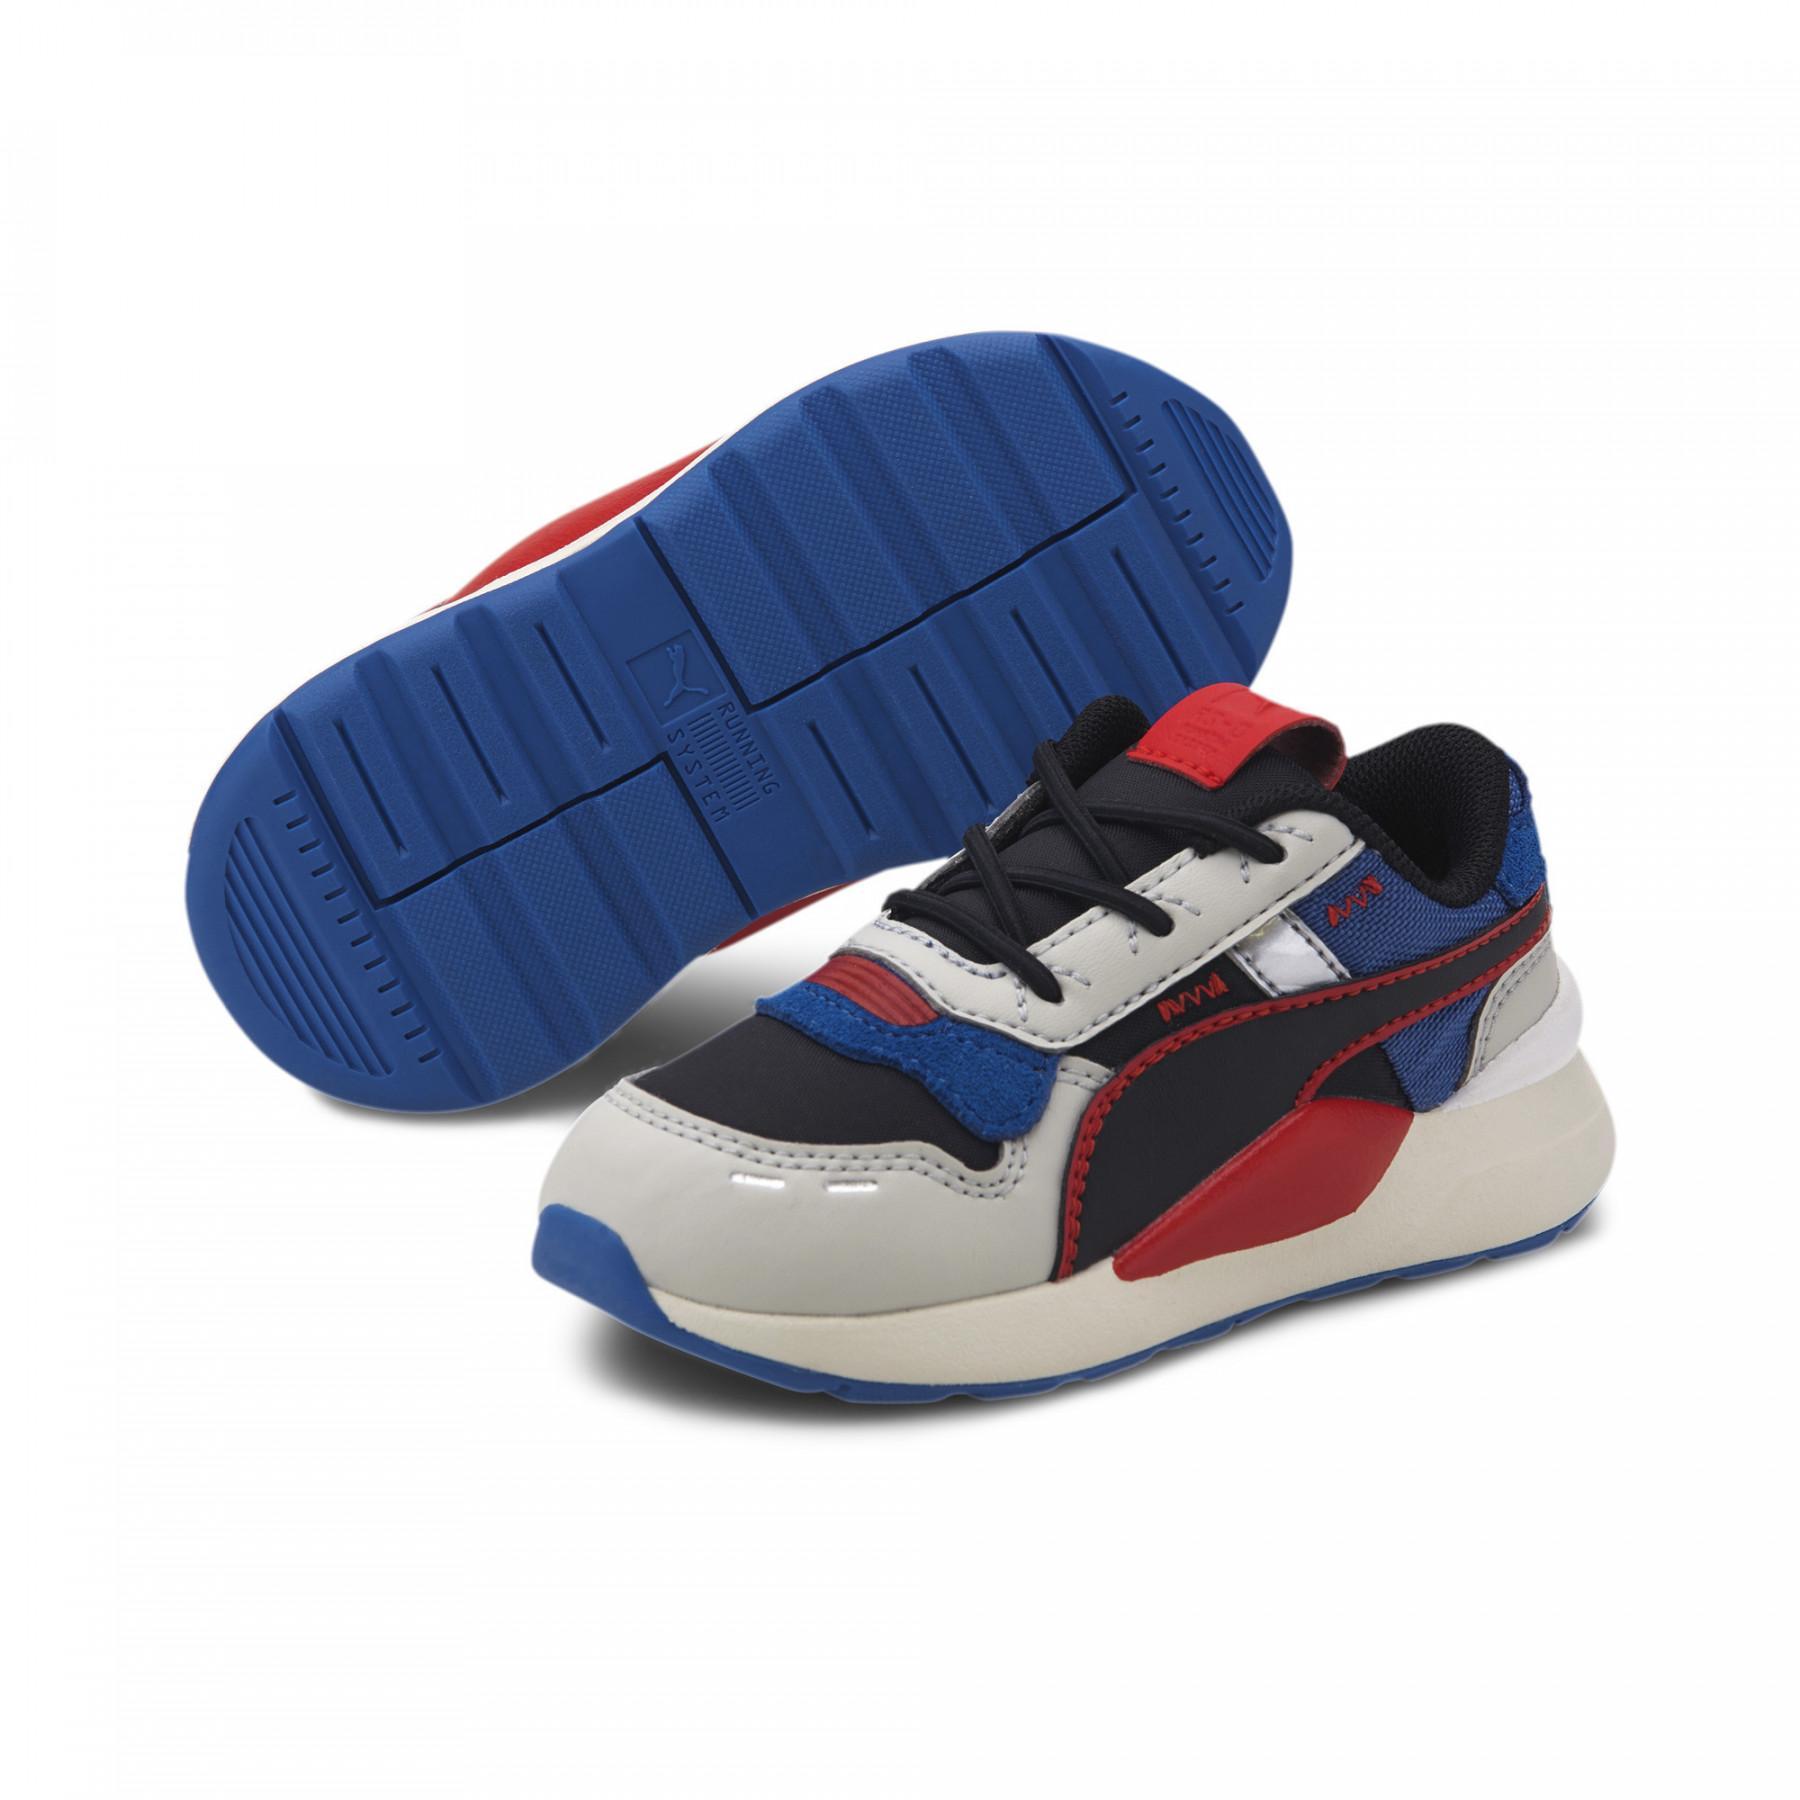 Zapatillas para bebés Puma RS 2.0 Futura AC